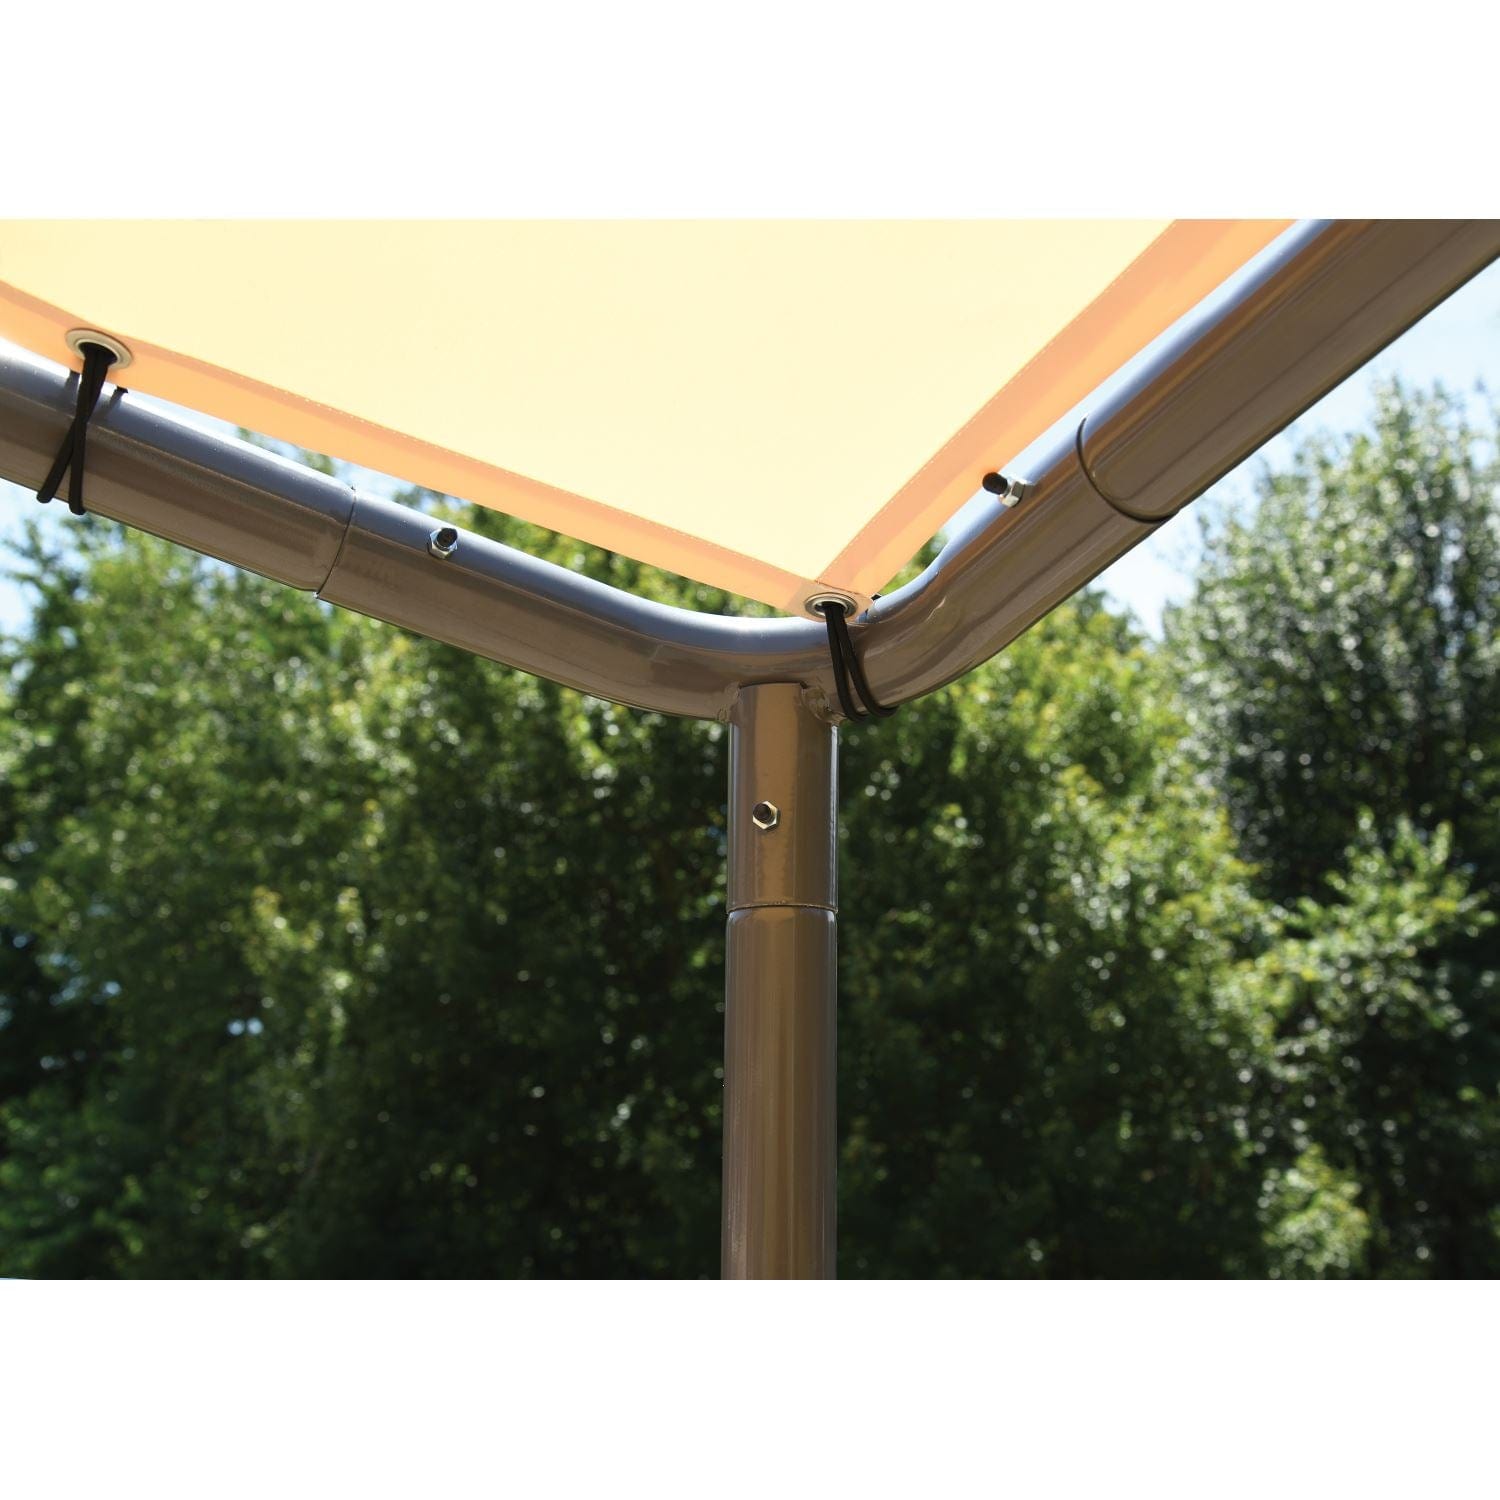 ShelterLogic Canopies ShelterLogic | 10x6 Solano Gazebo Canopy Tan Cover 22516